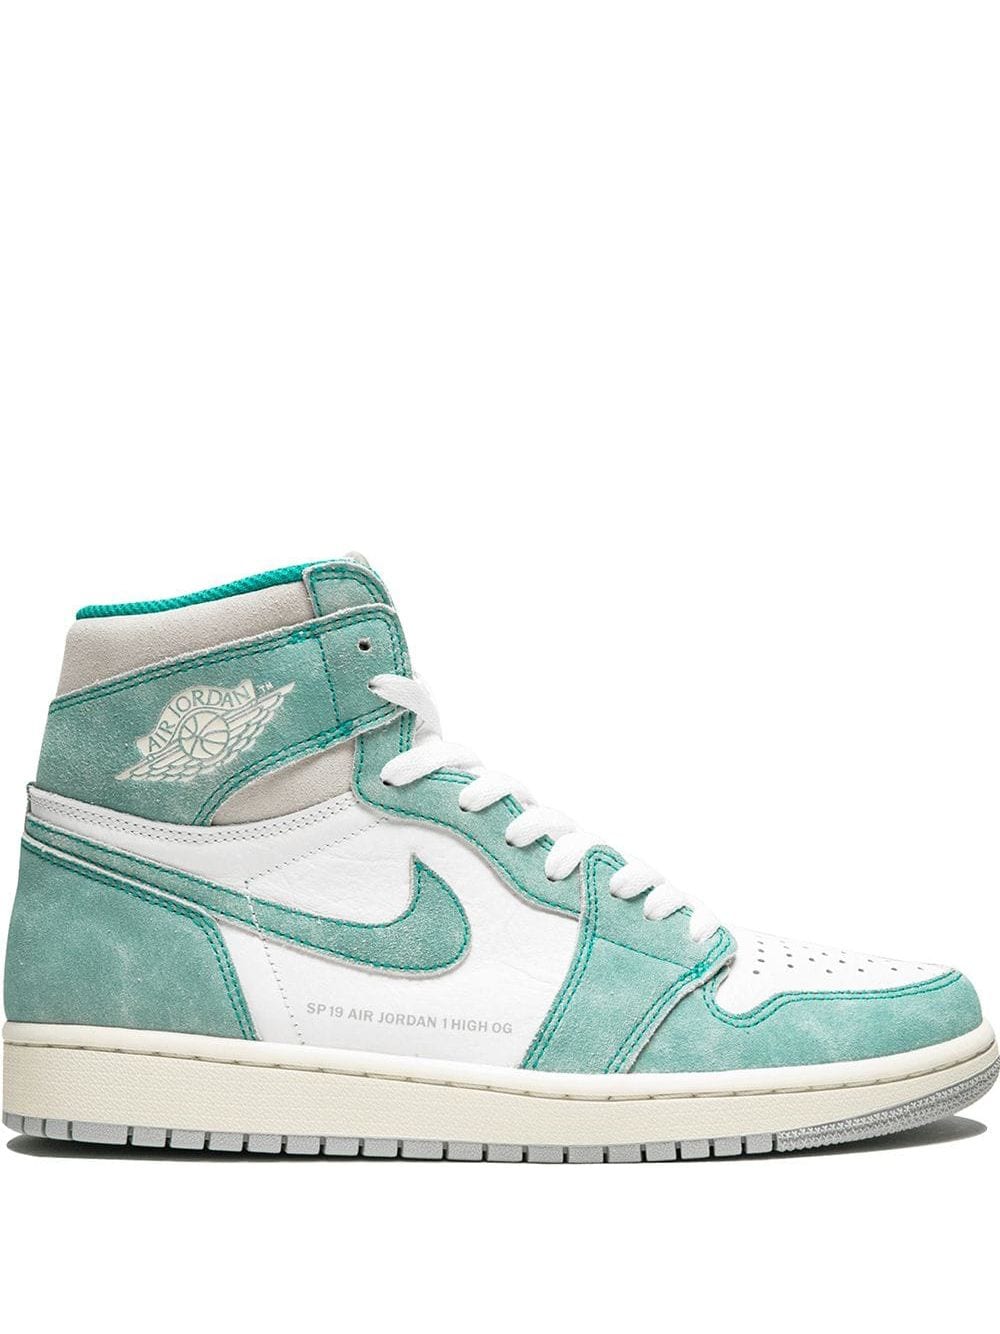 Giày Nike Air Jordan Retro màu xanh mint